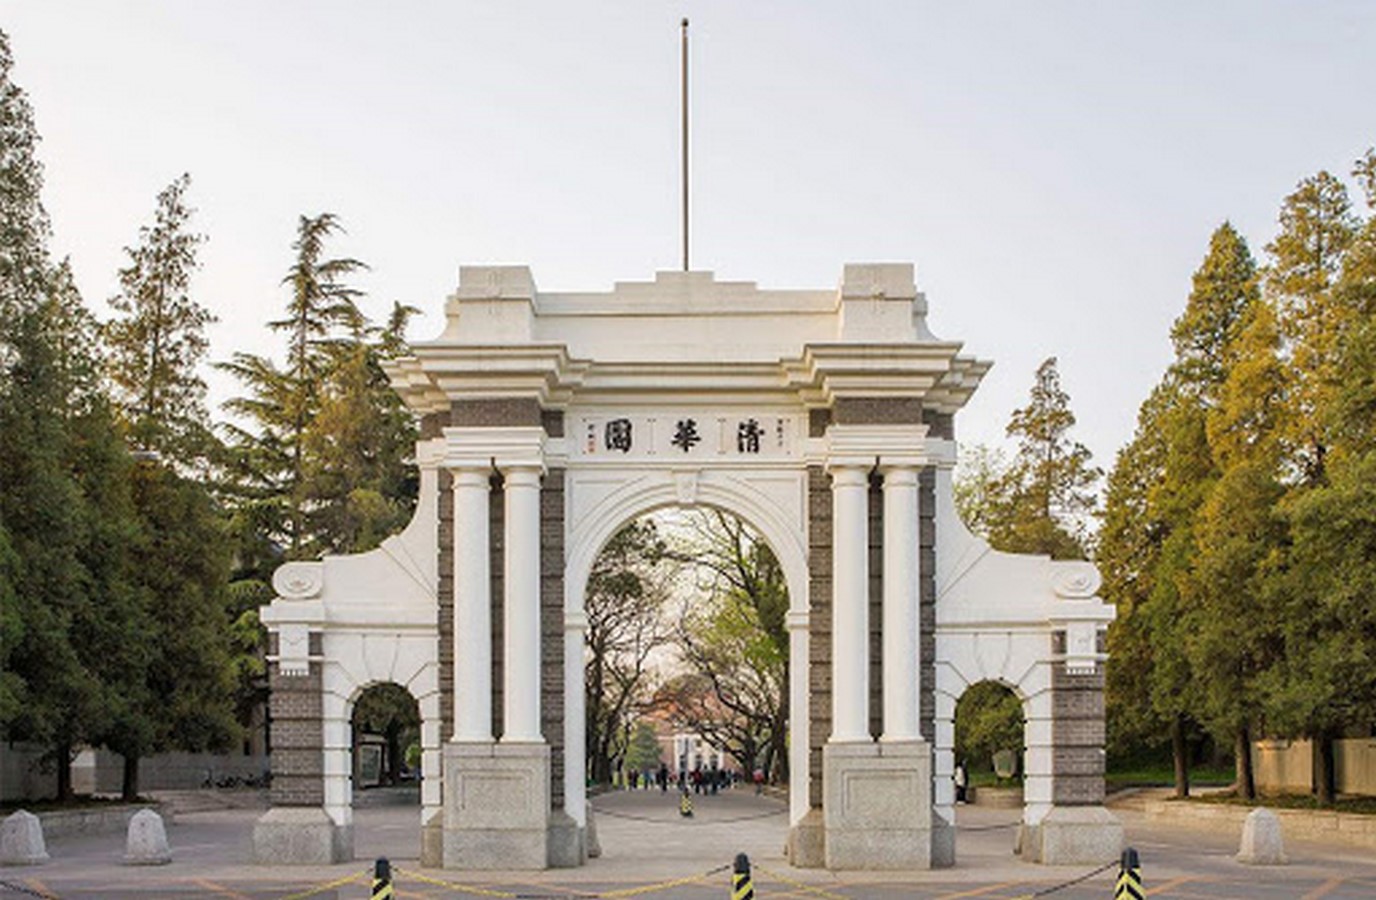 Bên trong khuôn viên đẹp nao lòng của Thanh Hoa - “trường Harvard Trung Quốc”: Nên thơ đến mức thành địa điểm du lịch - Ảnh 1.